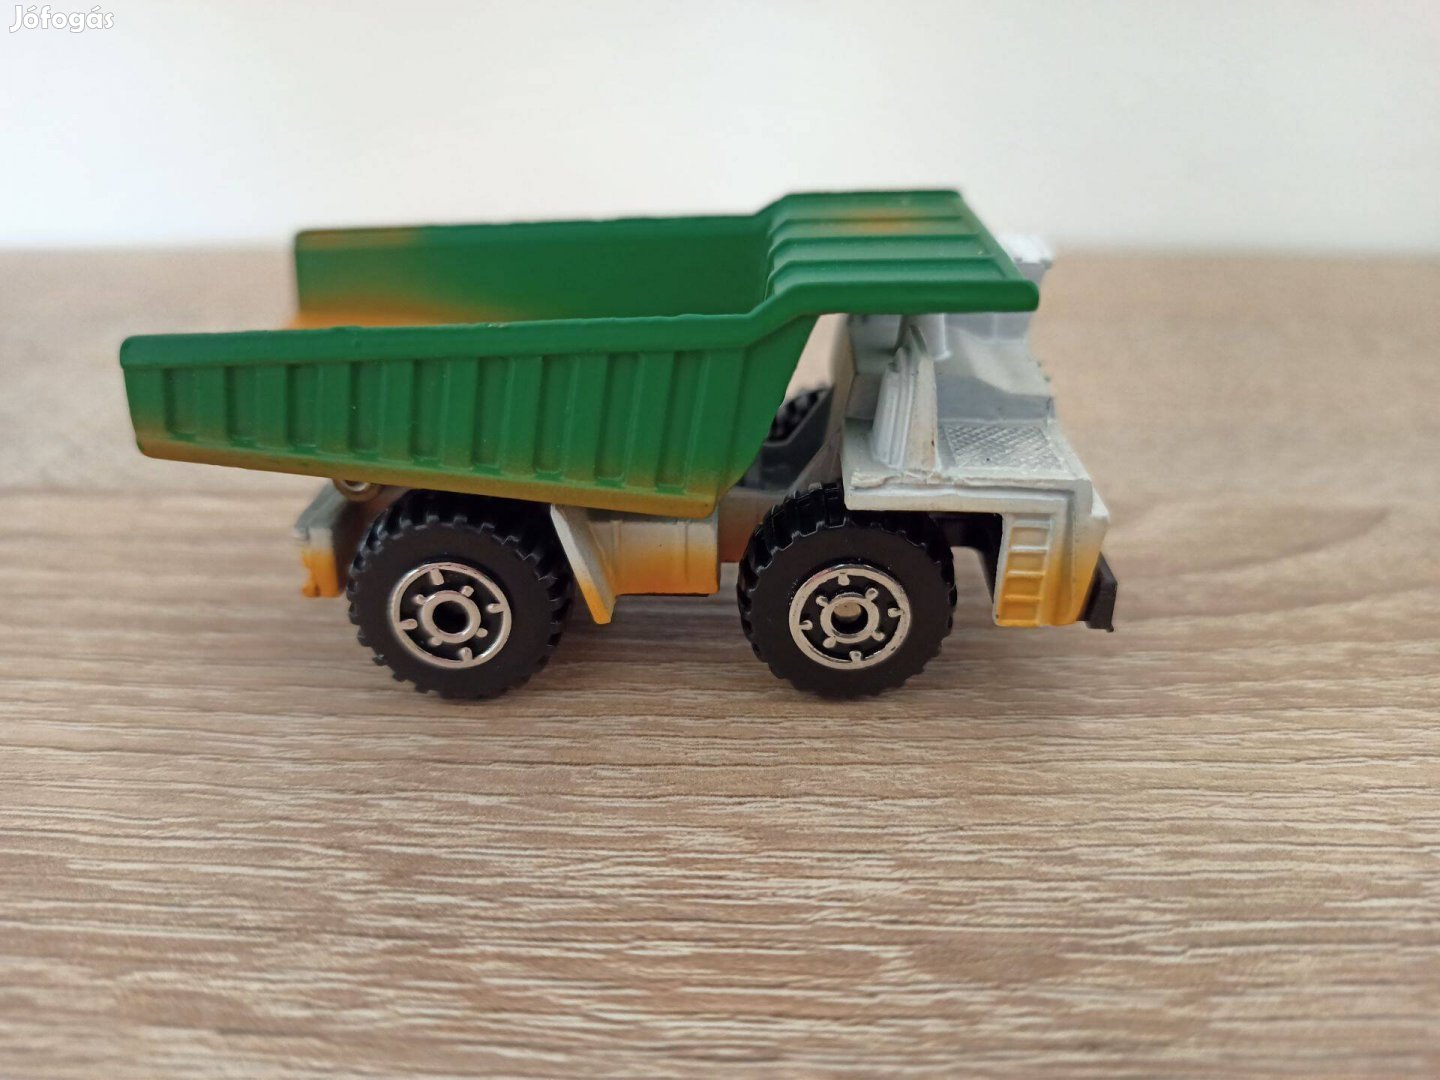 1989 Matchbox Dump Truck white green